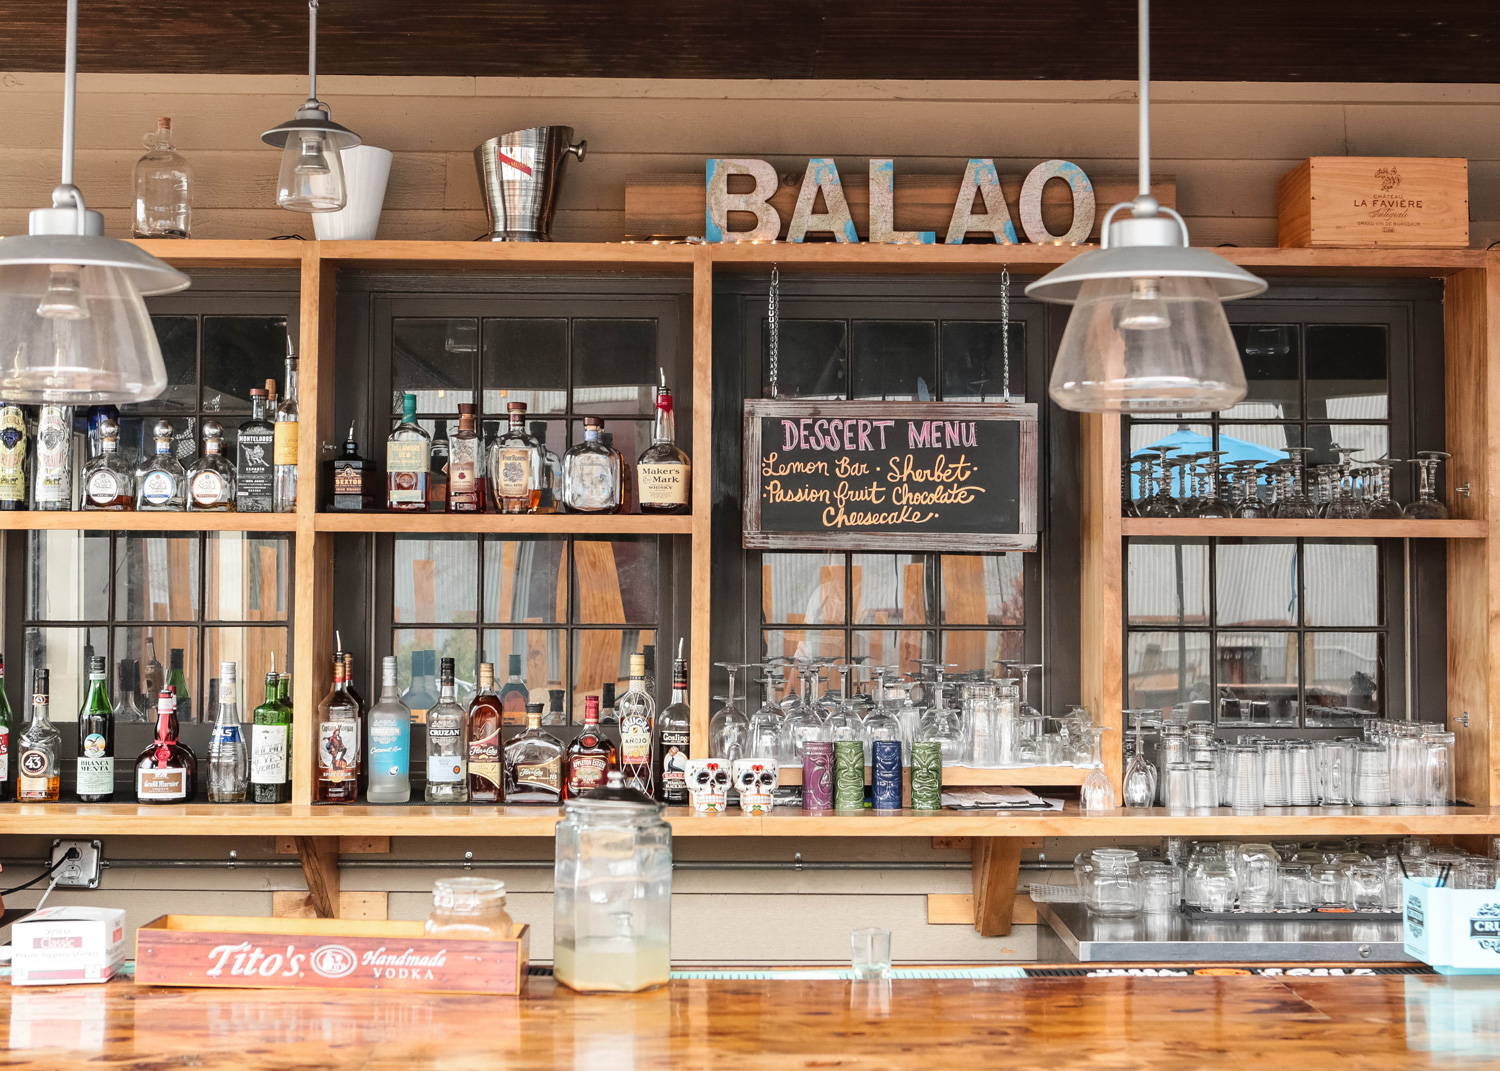 behind the bar at Balao